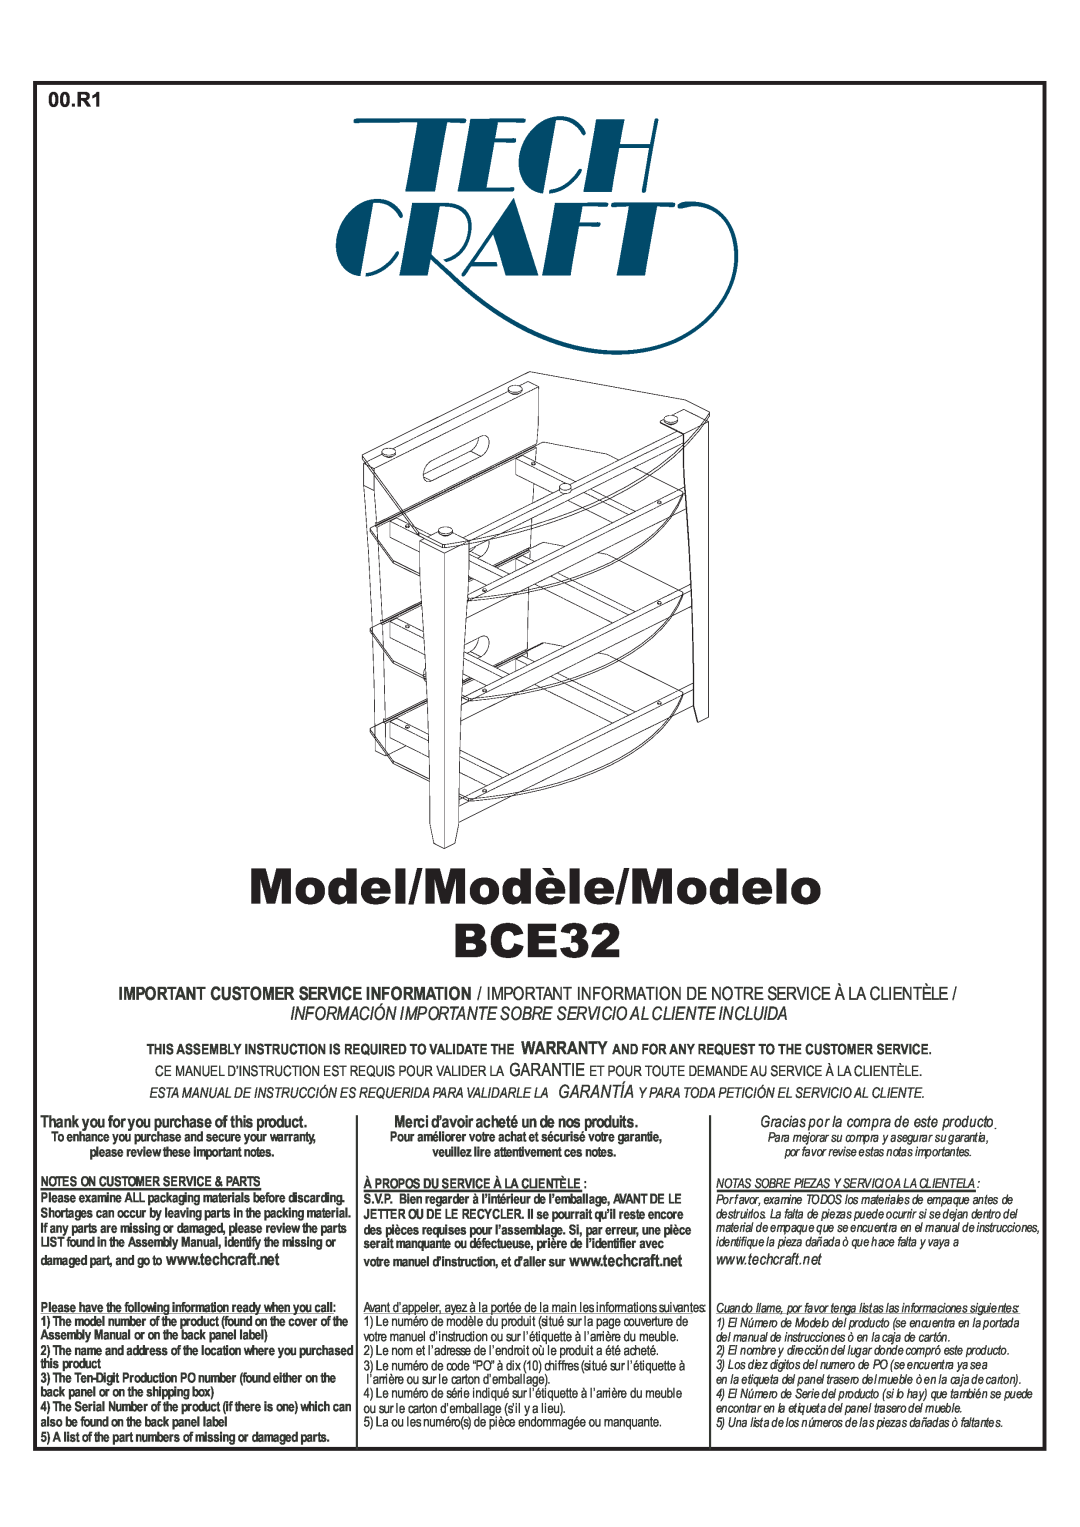 Tech Craft BCE32 warranty Model/Modèle/Modelo, 00.R1, Información Importante Sobre Servicio Al Cliente Incluida 